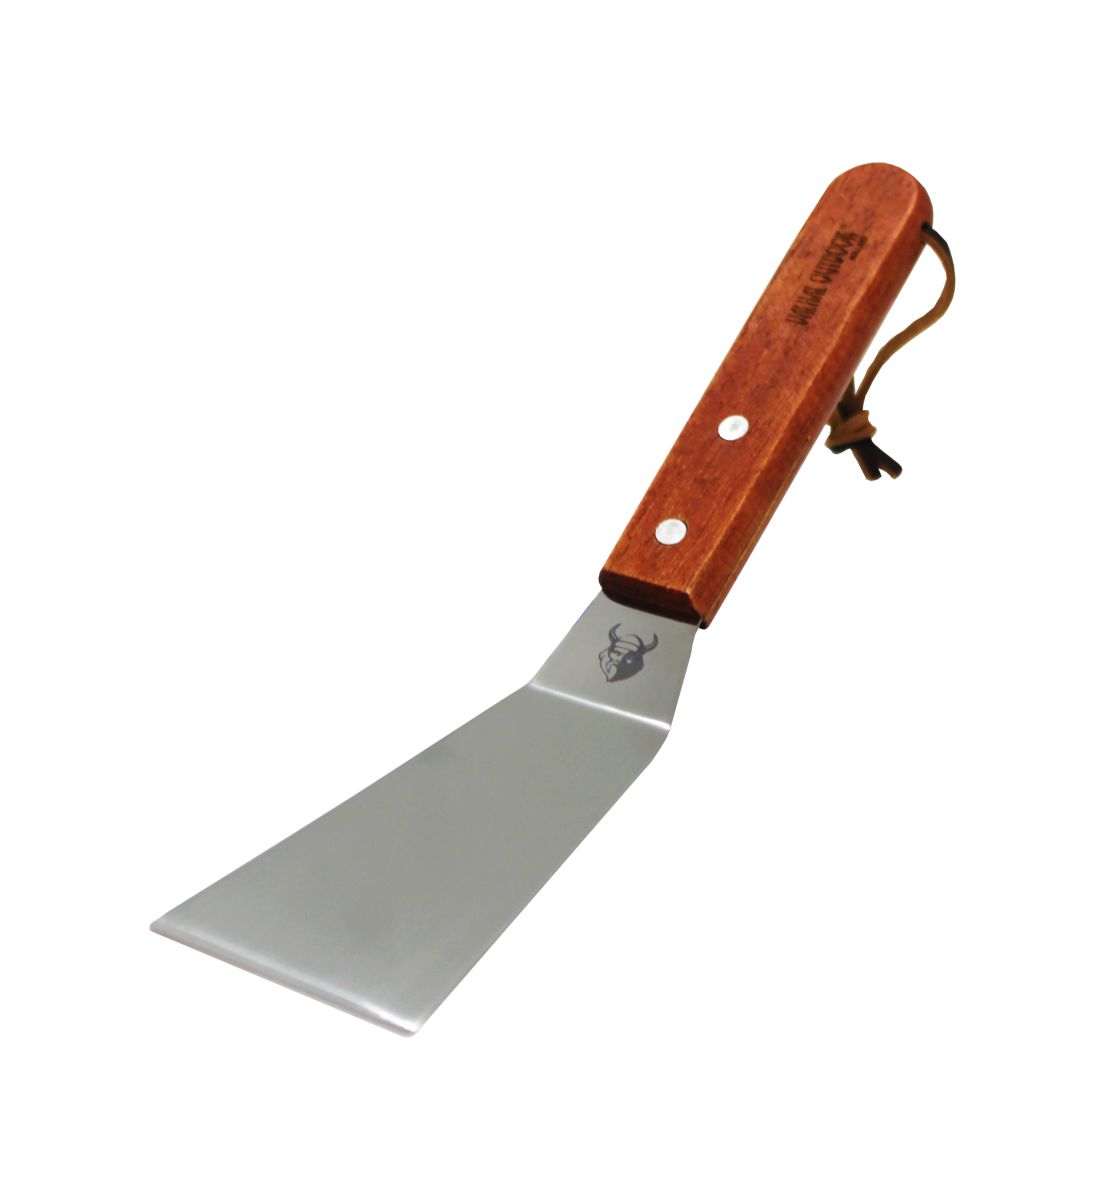 vhsp3 flexible spatula